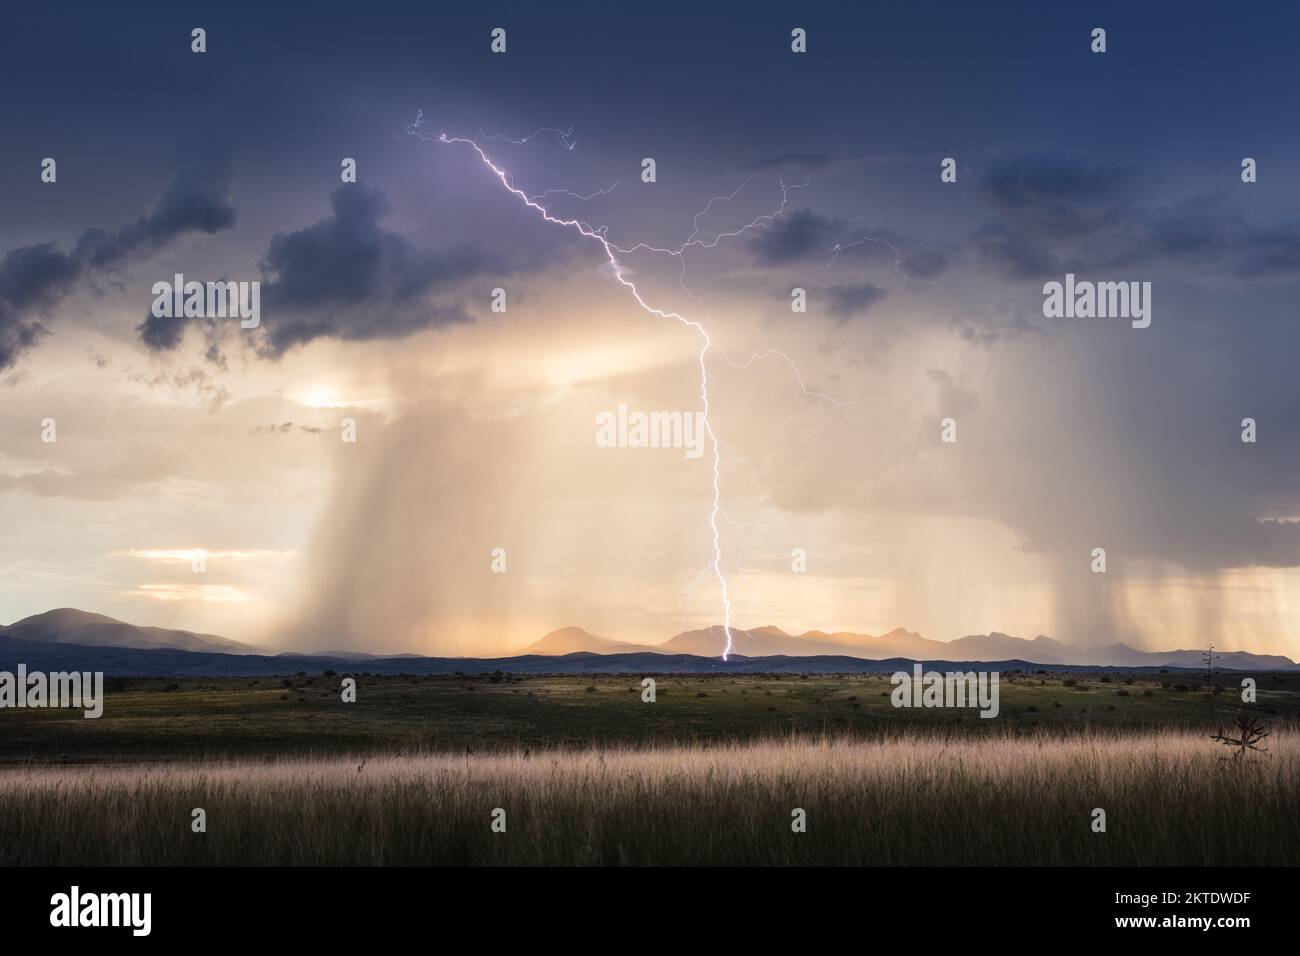 Ciel orageux avec foudre, nuages spectaculaires et lumière dorée sur un champ proche de Sonoita, en Arizona Banque D'Images